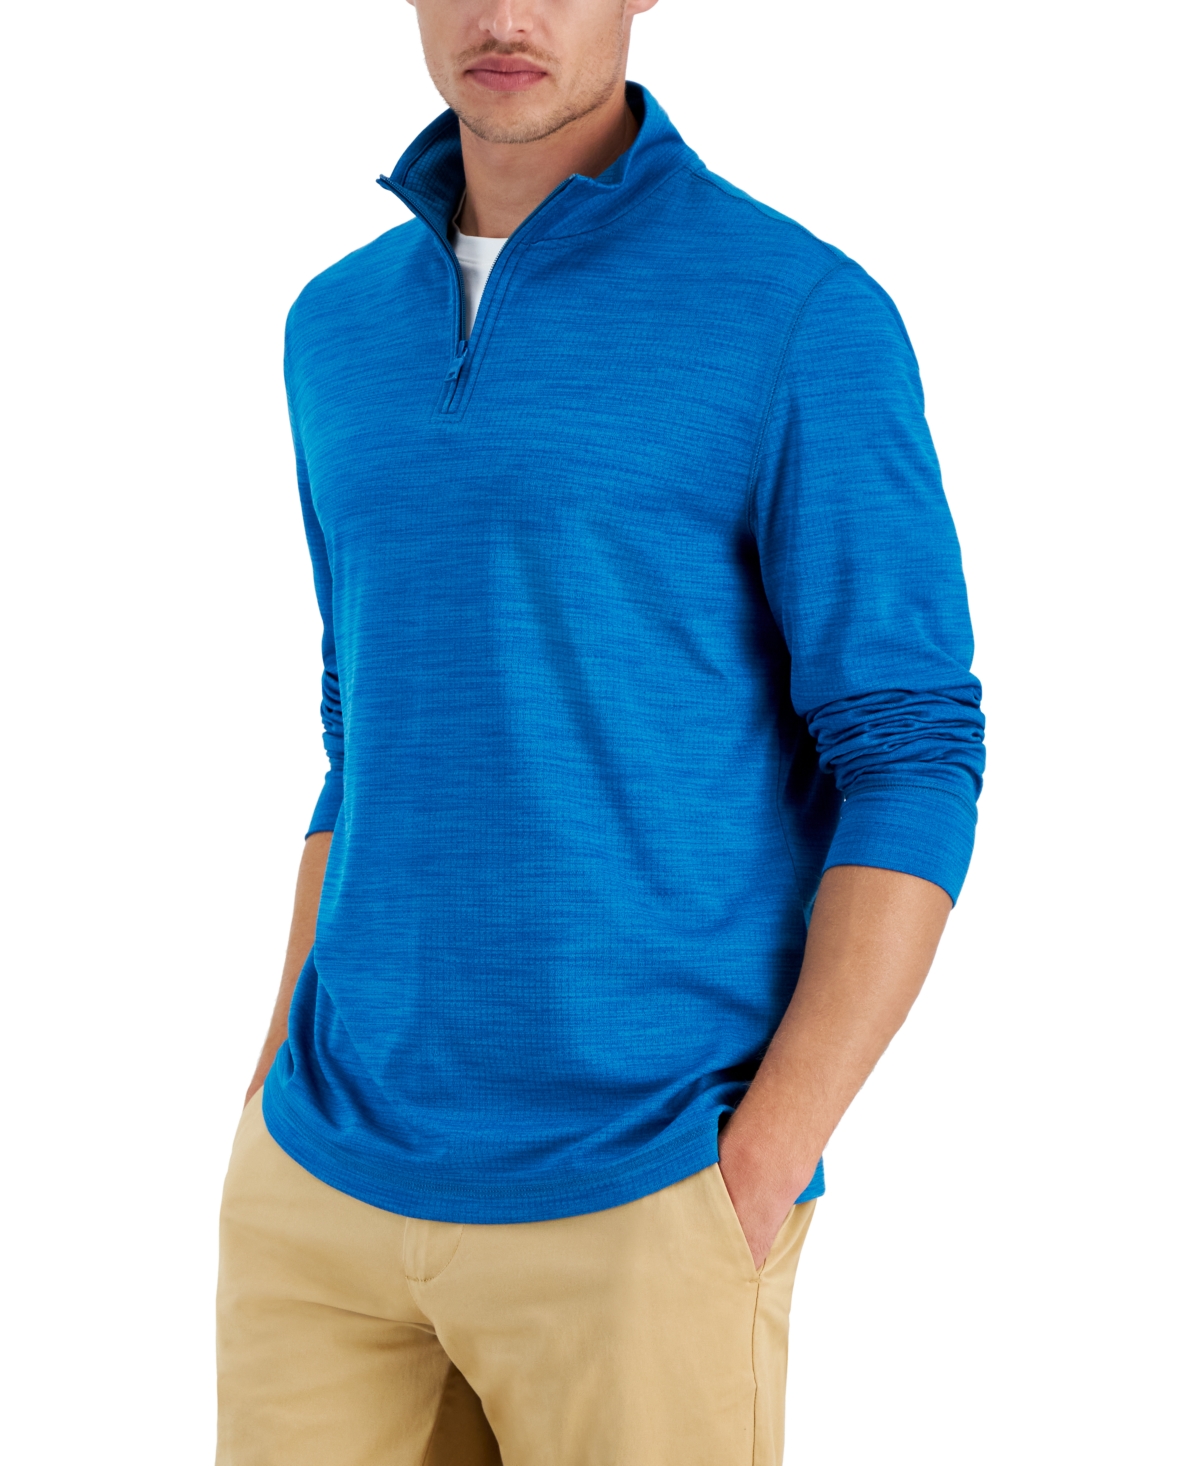 Men's Quarter-Zip Tech Sweatshirt, Created for Macy's - Fire Burst